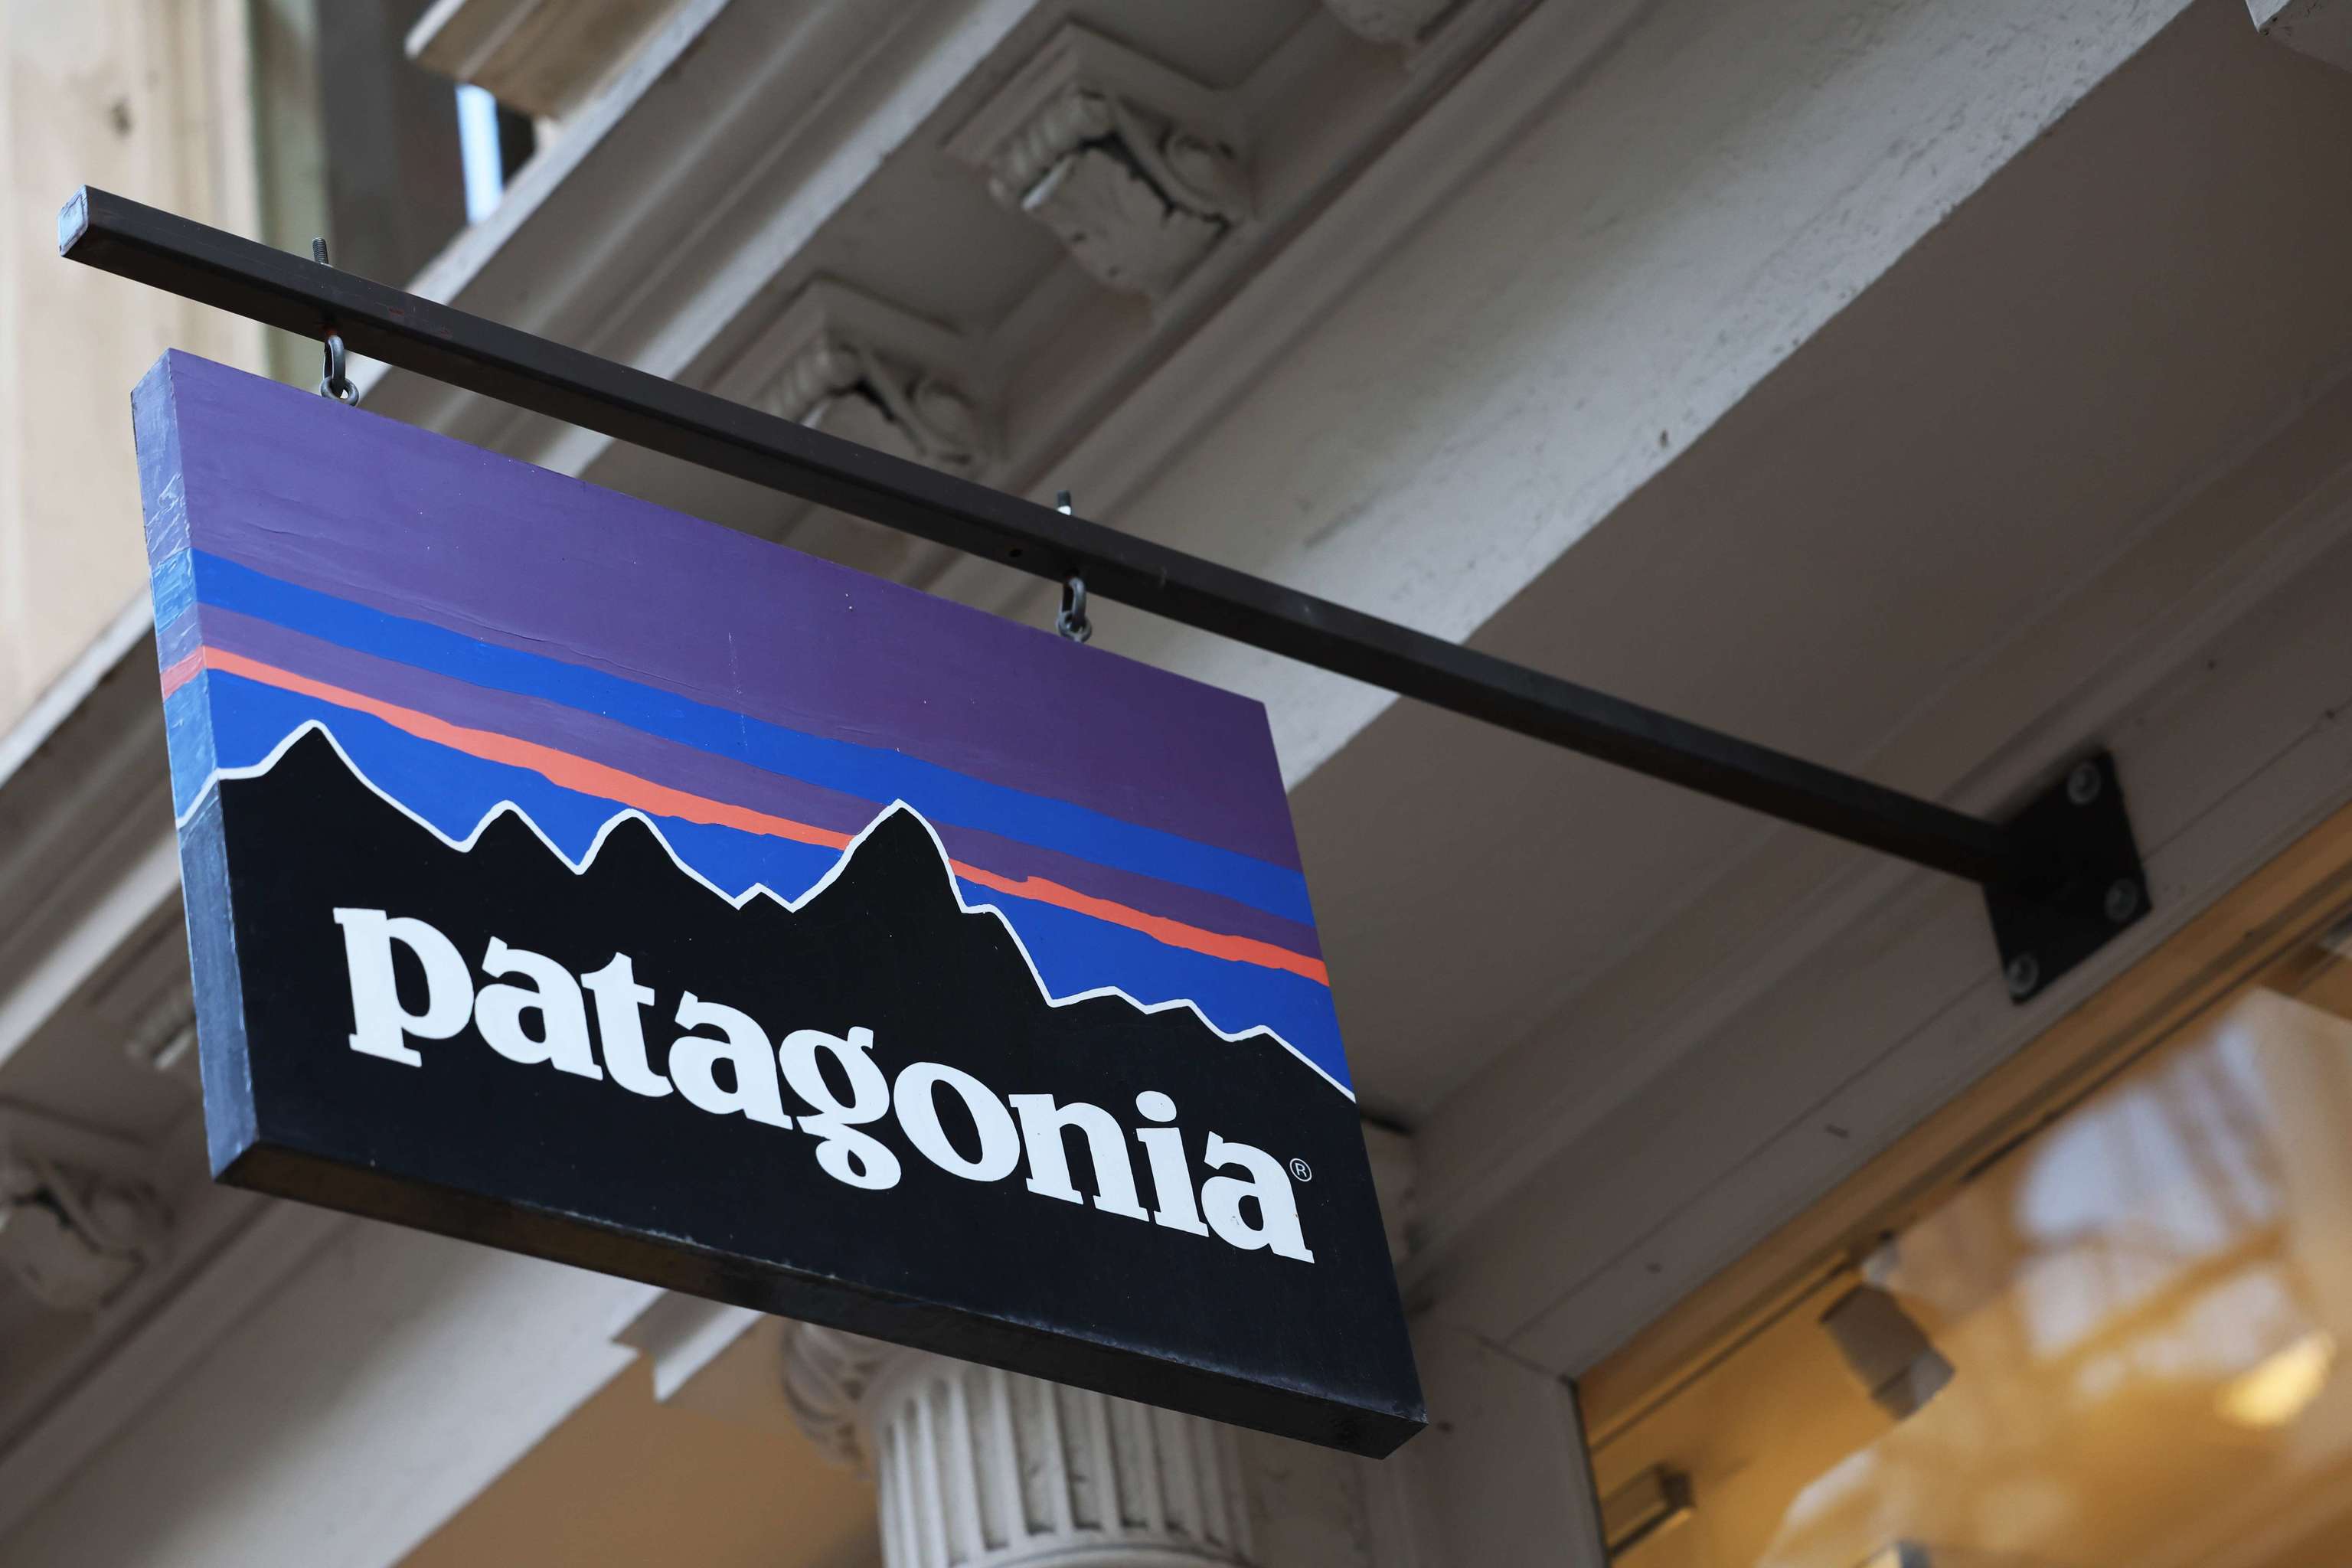 El fundador de Patagonia dona su marca de ropa para la protección del  medioambiente | Empresas